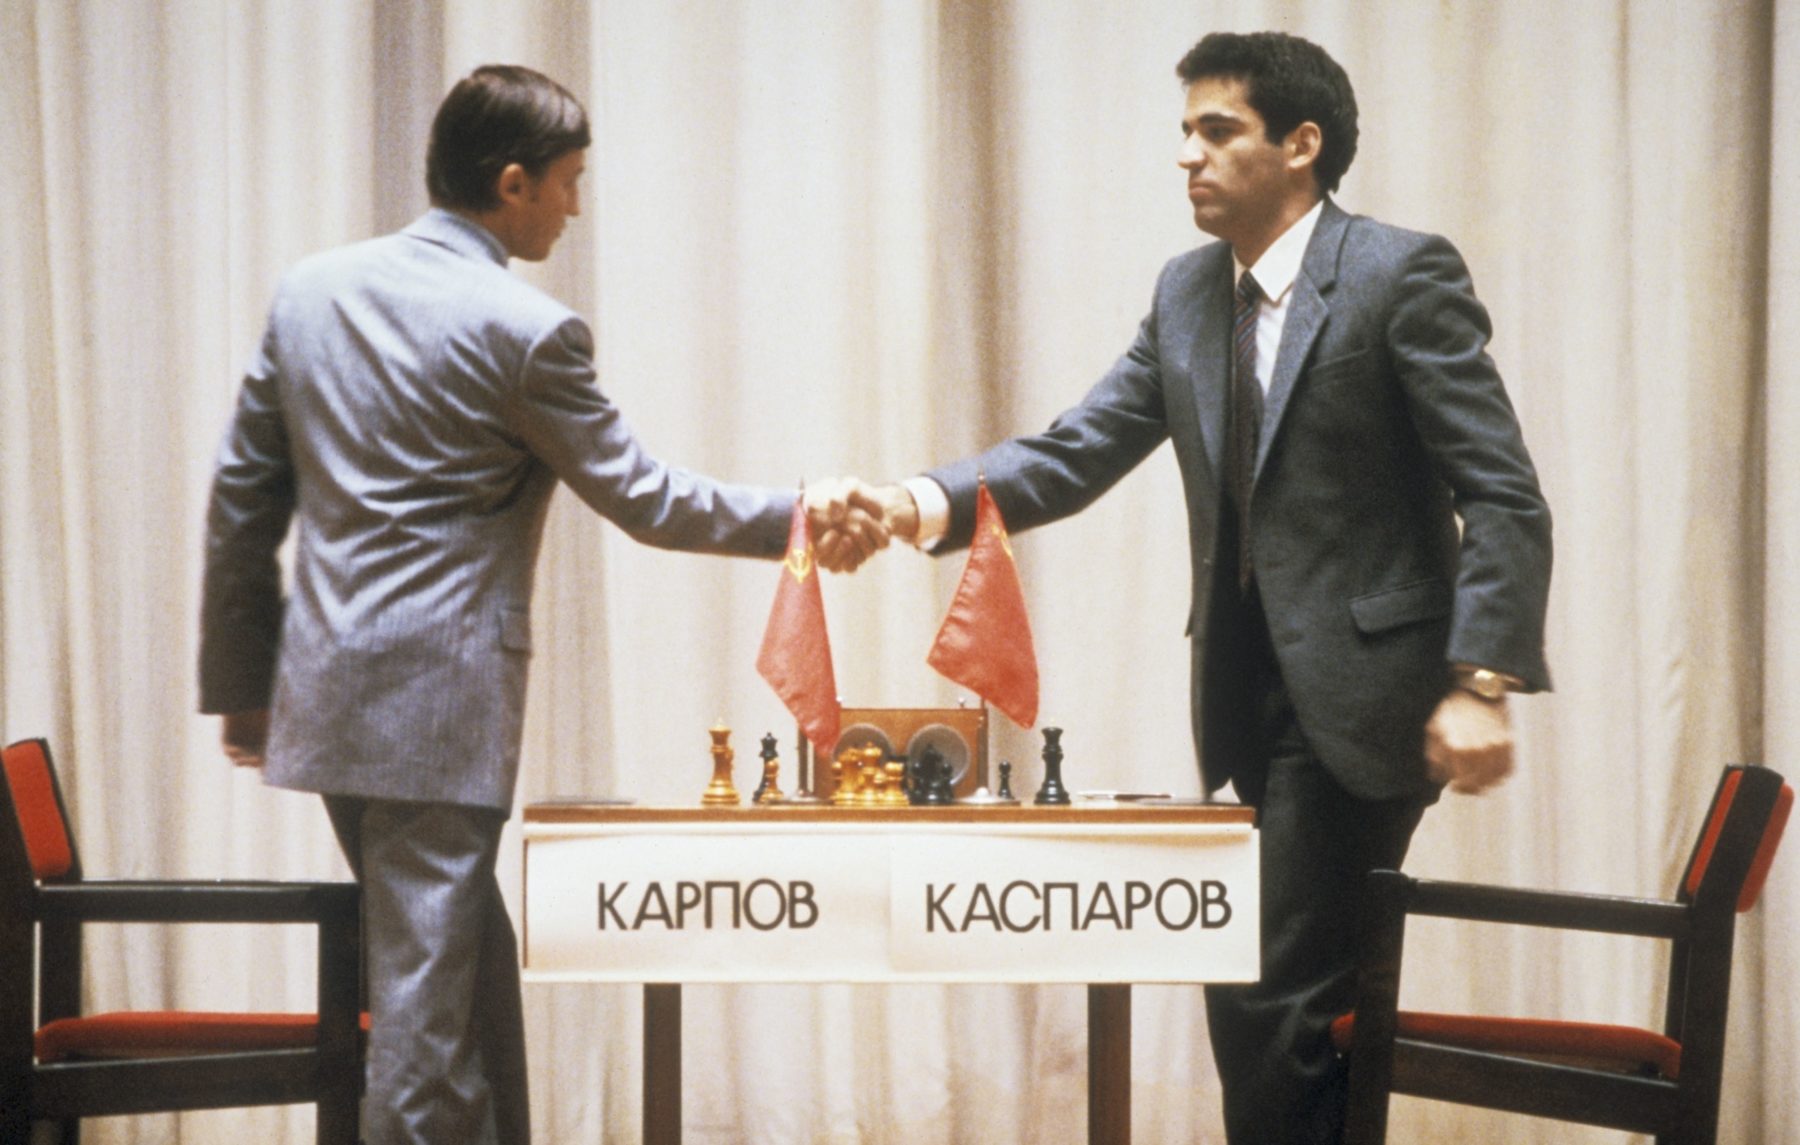 Karpov vs Kasparov: King's Indian Defense 